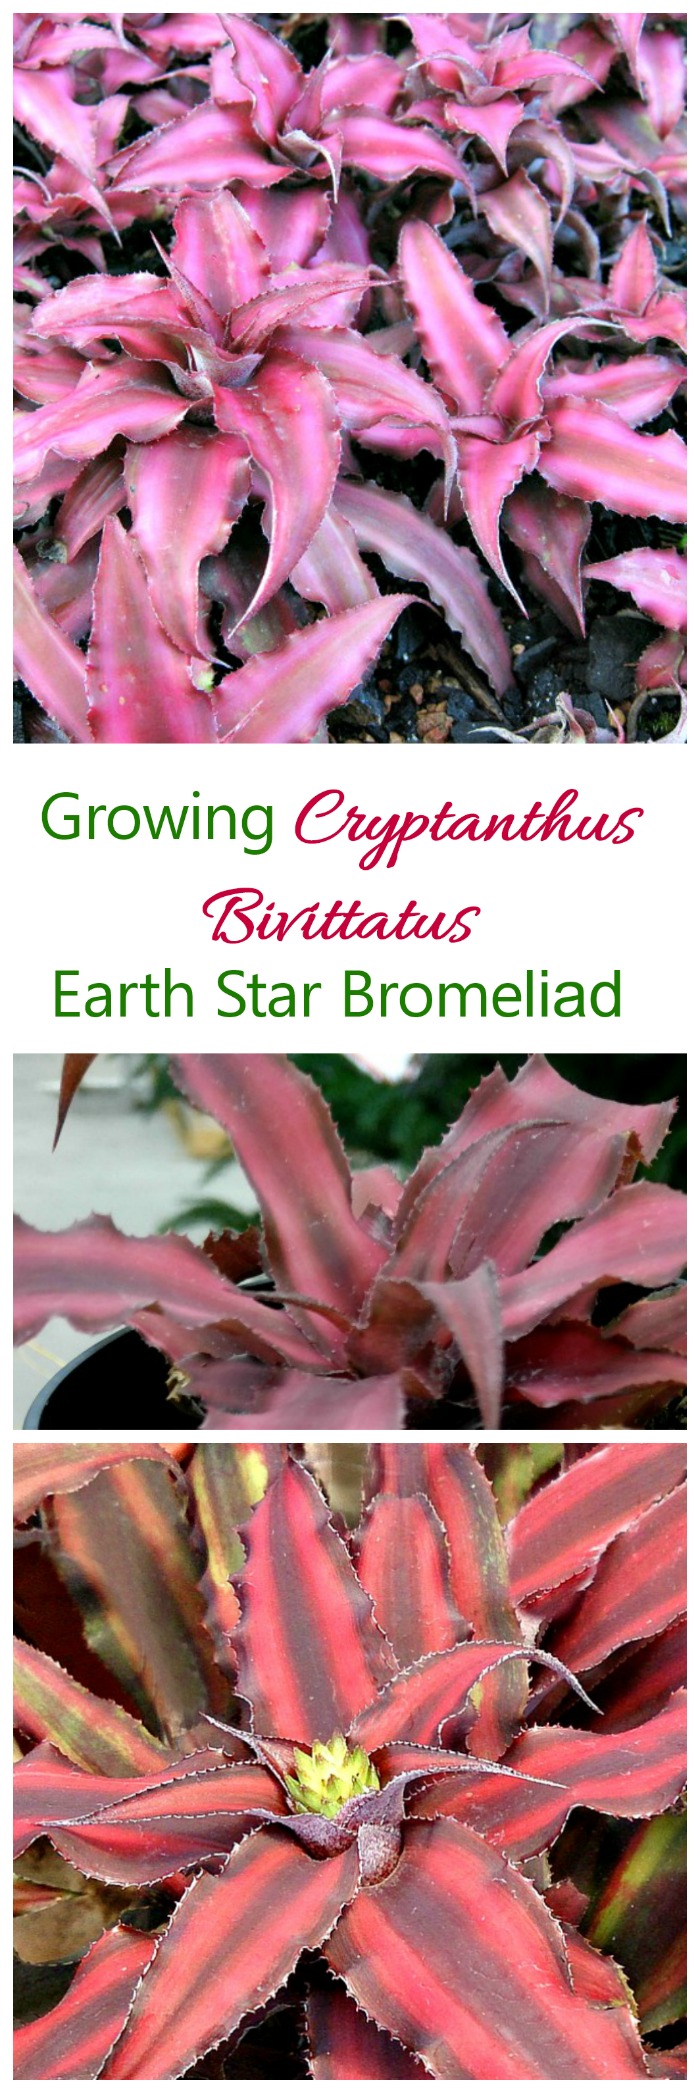 Cryptanthus Bivittatus - وڌندڙ ڌرتي اسٽار بروميلياد